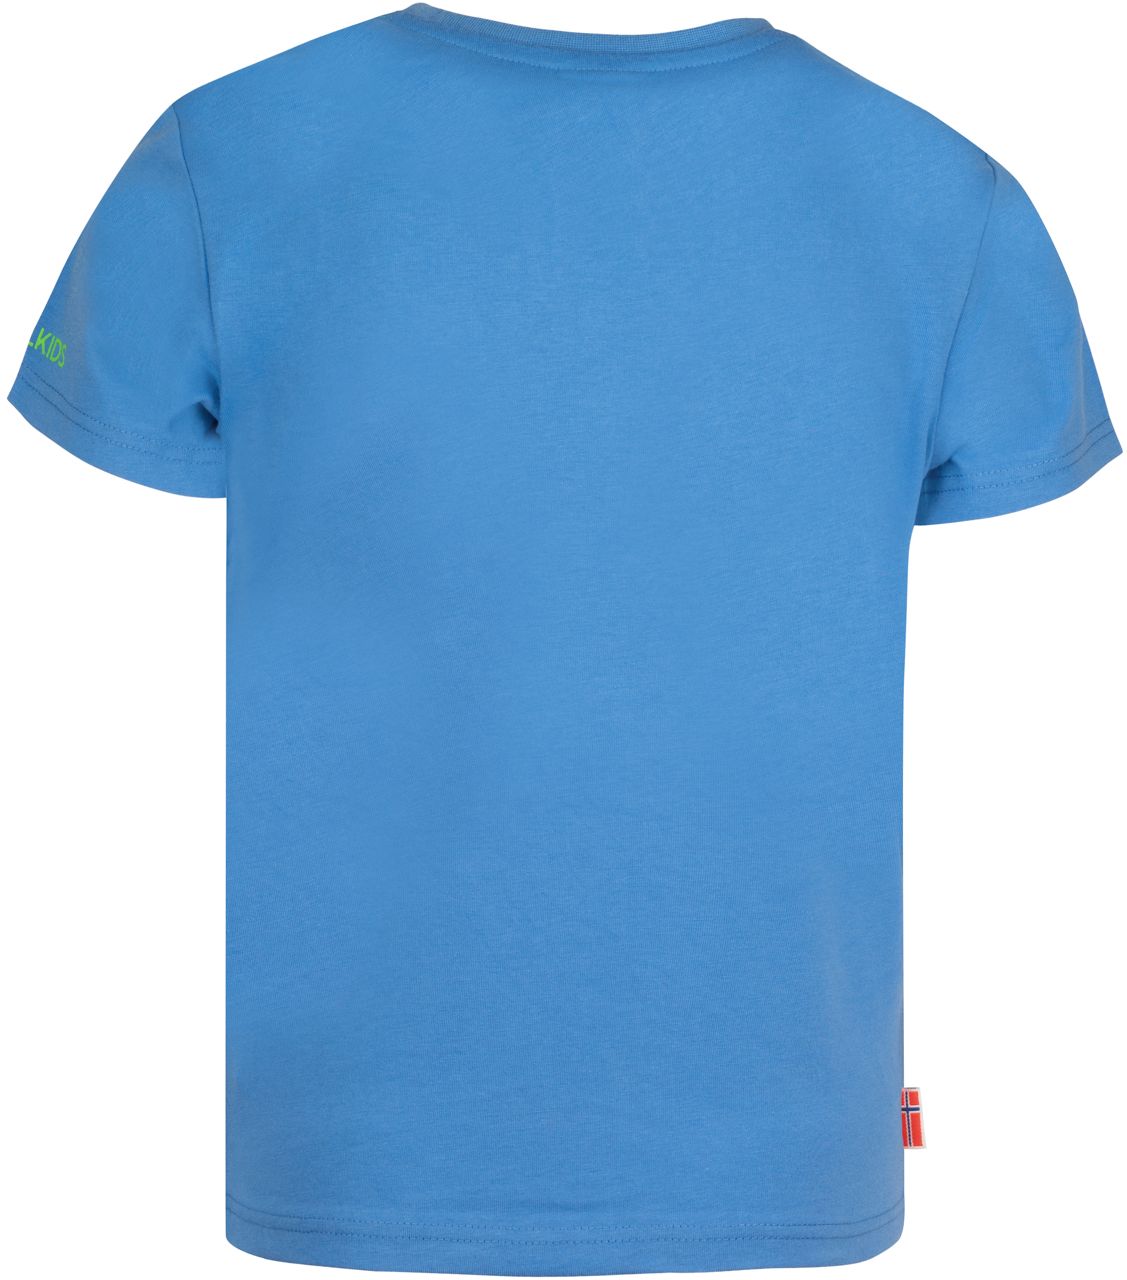 Trollkids Oppland T-Shirt UPF 30+ Medium Blue/Green